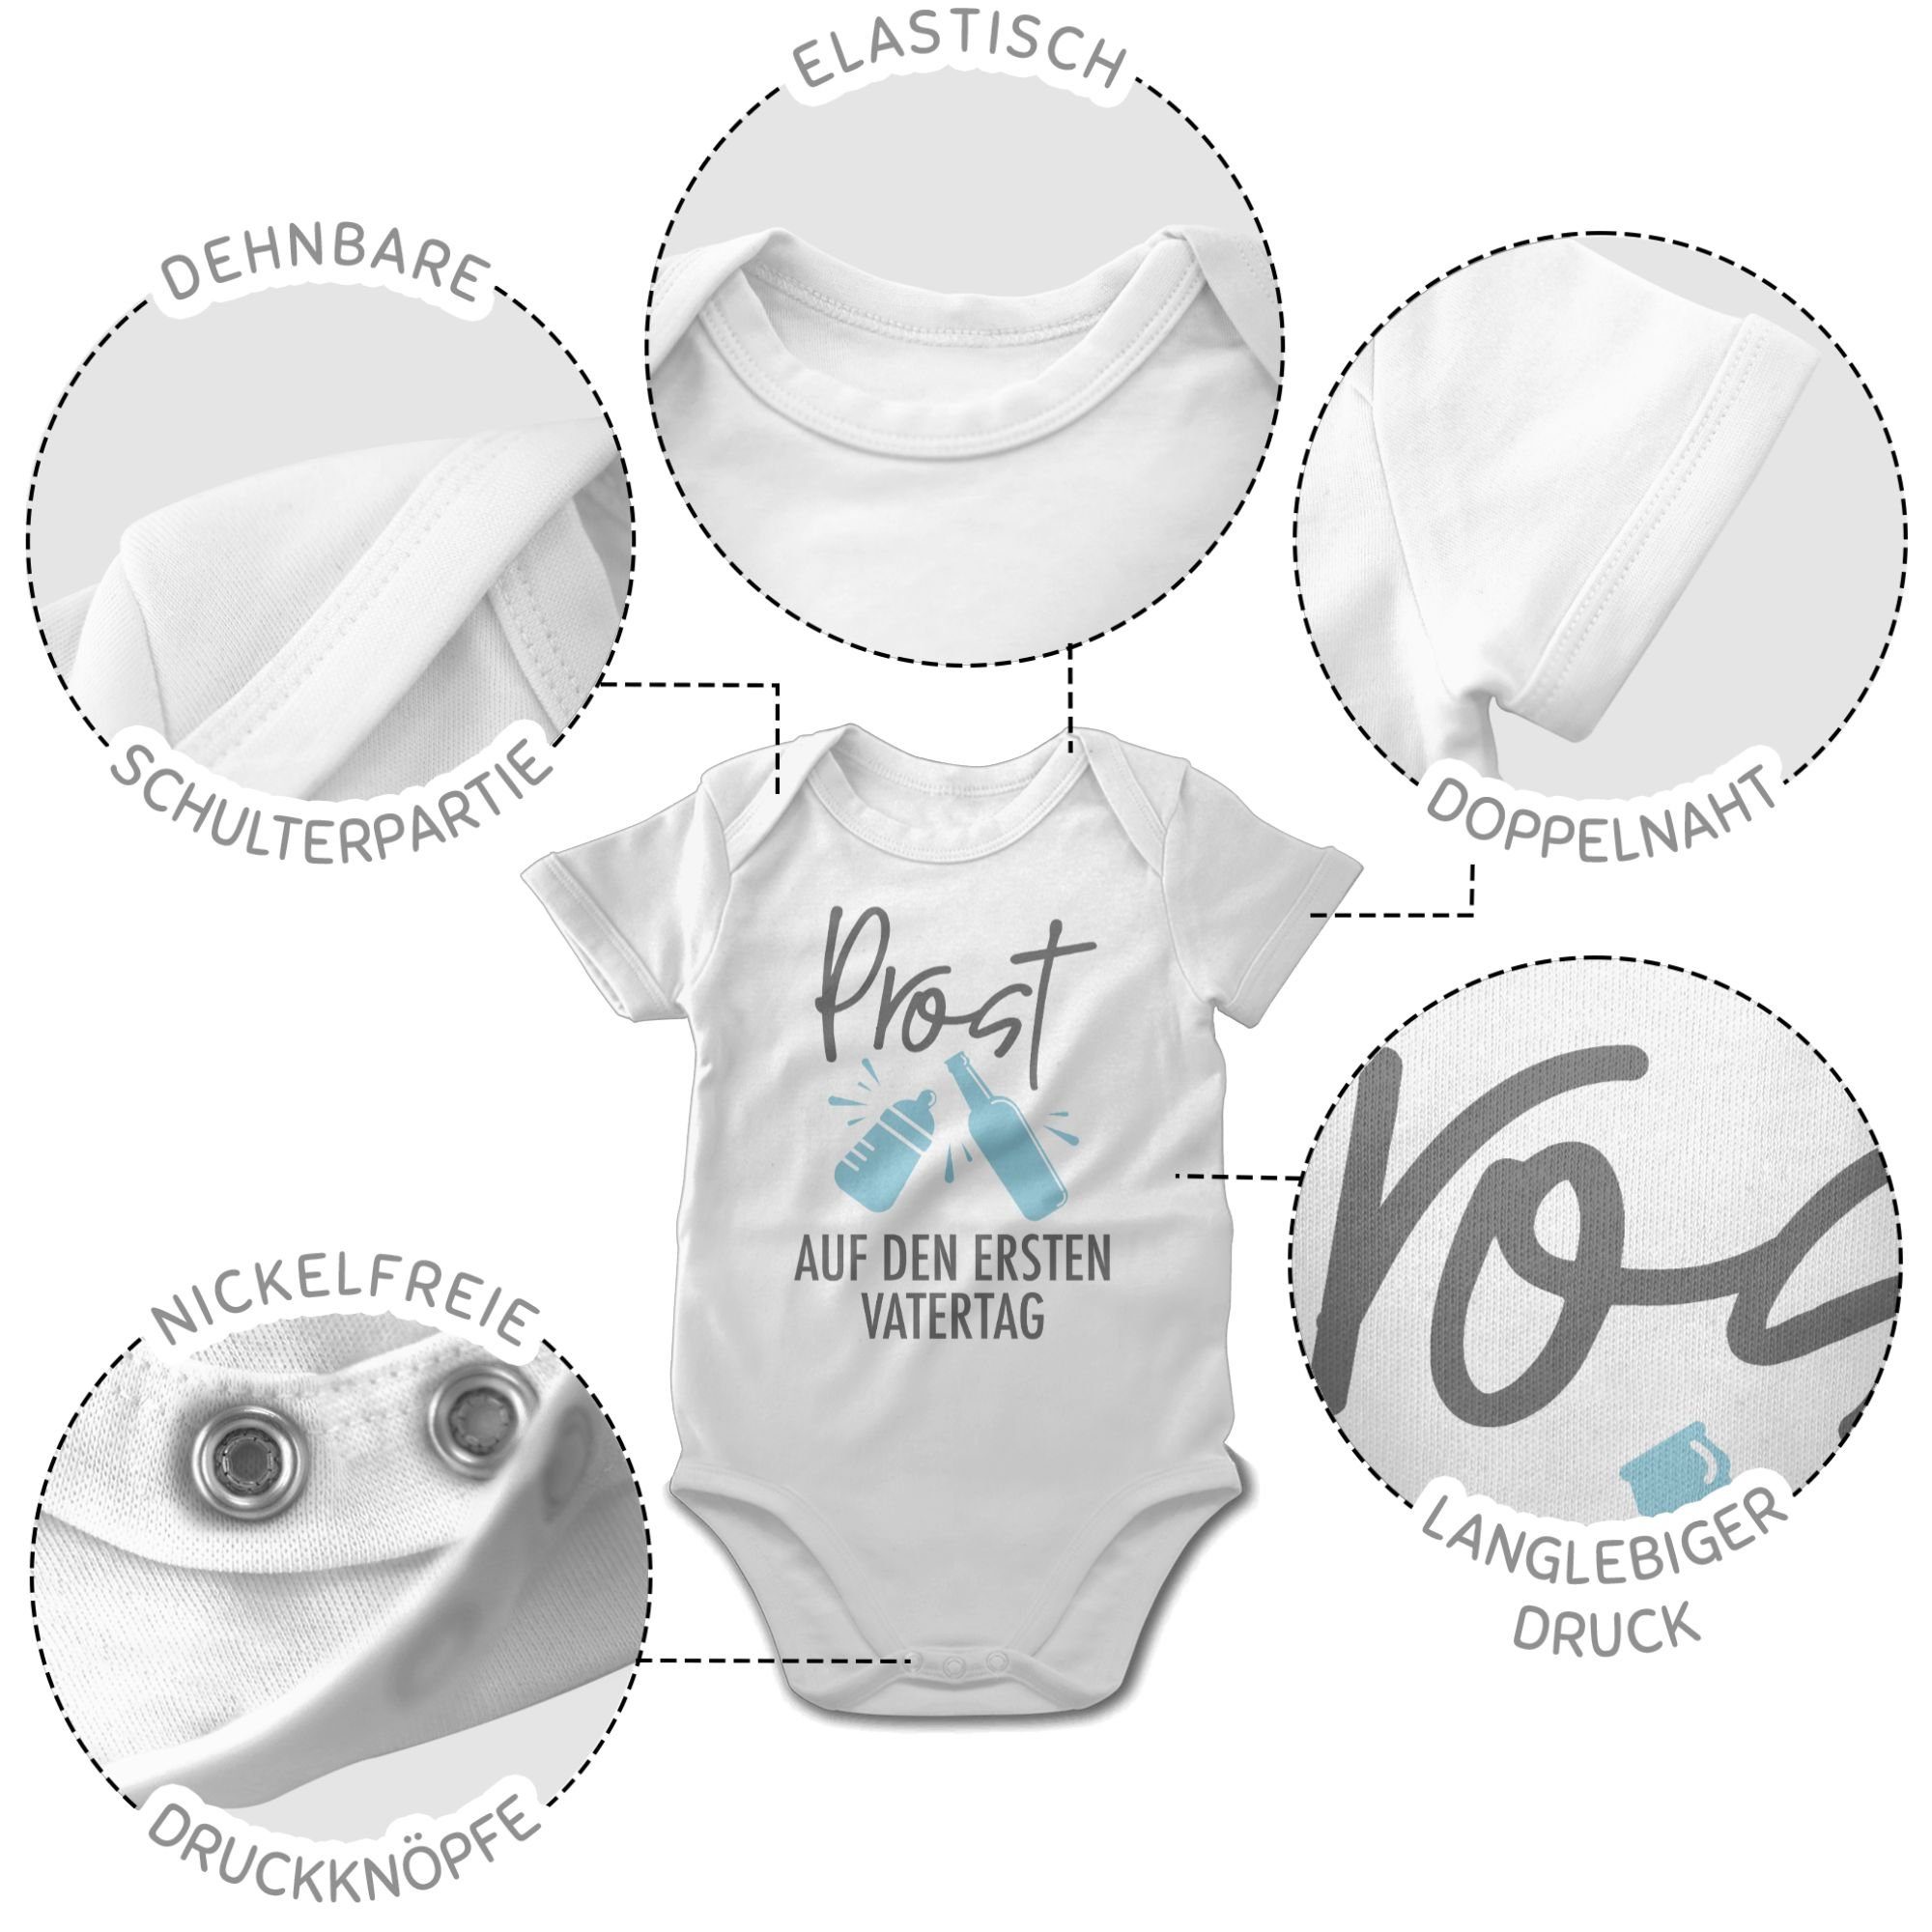 Prost Vatertag Baby Geschenk - 1 Shirtbody den grau/blau auf Vatertag Weiß Shirtracer ersten